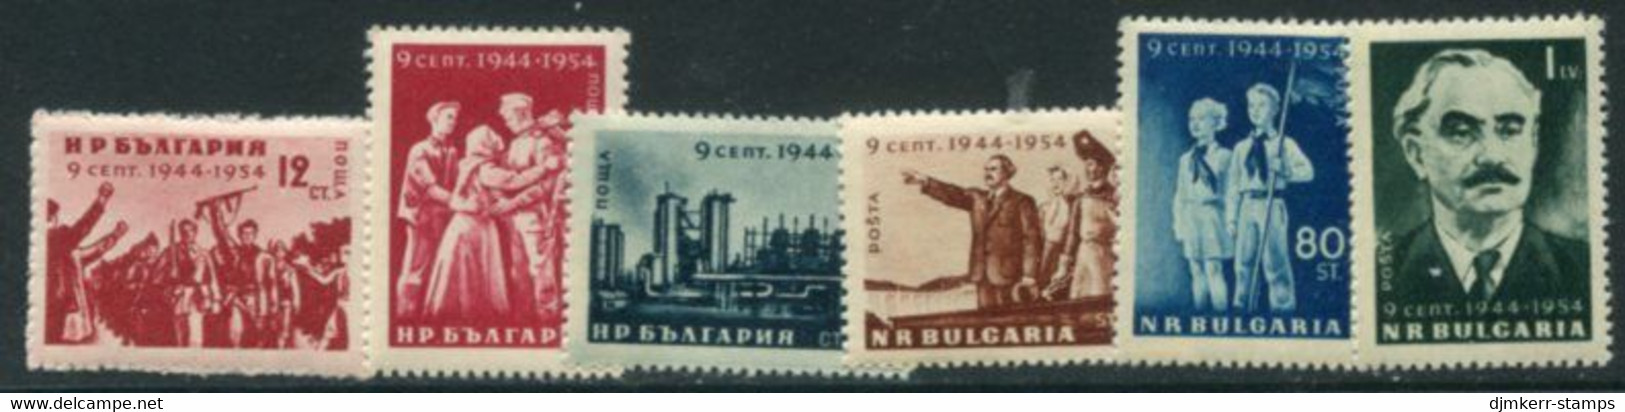 BULGARIA 1954 Liberation Anniversary MNH / ** .  Michel 921-26 - Ongebruikt